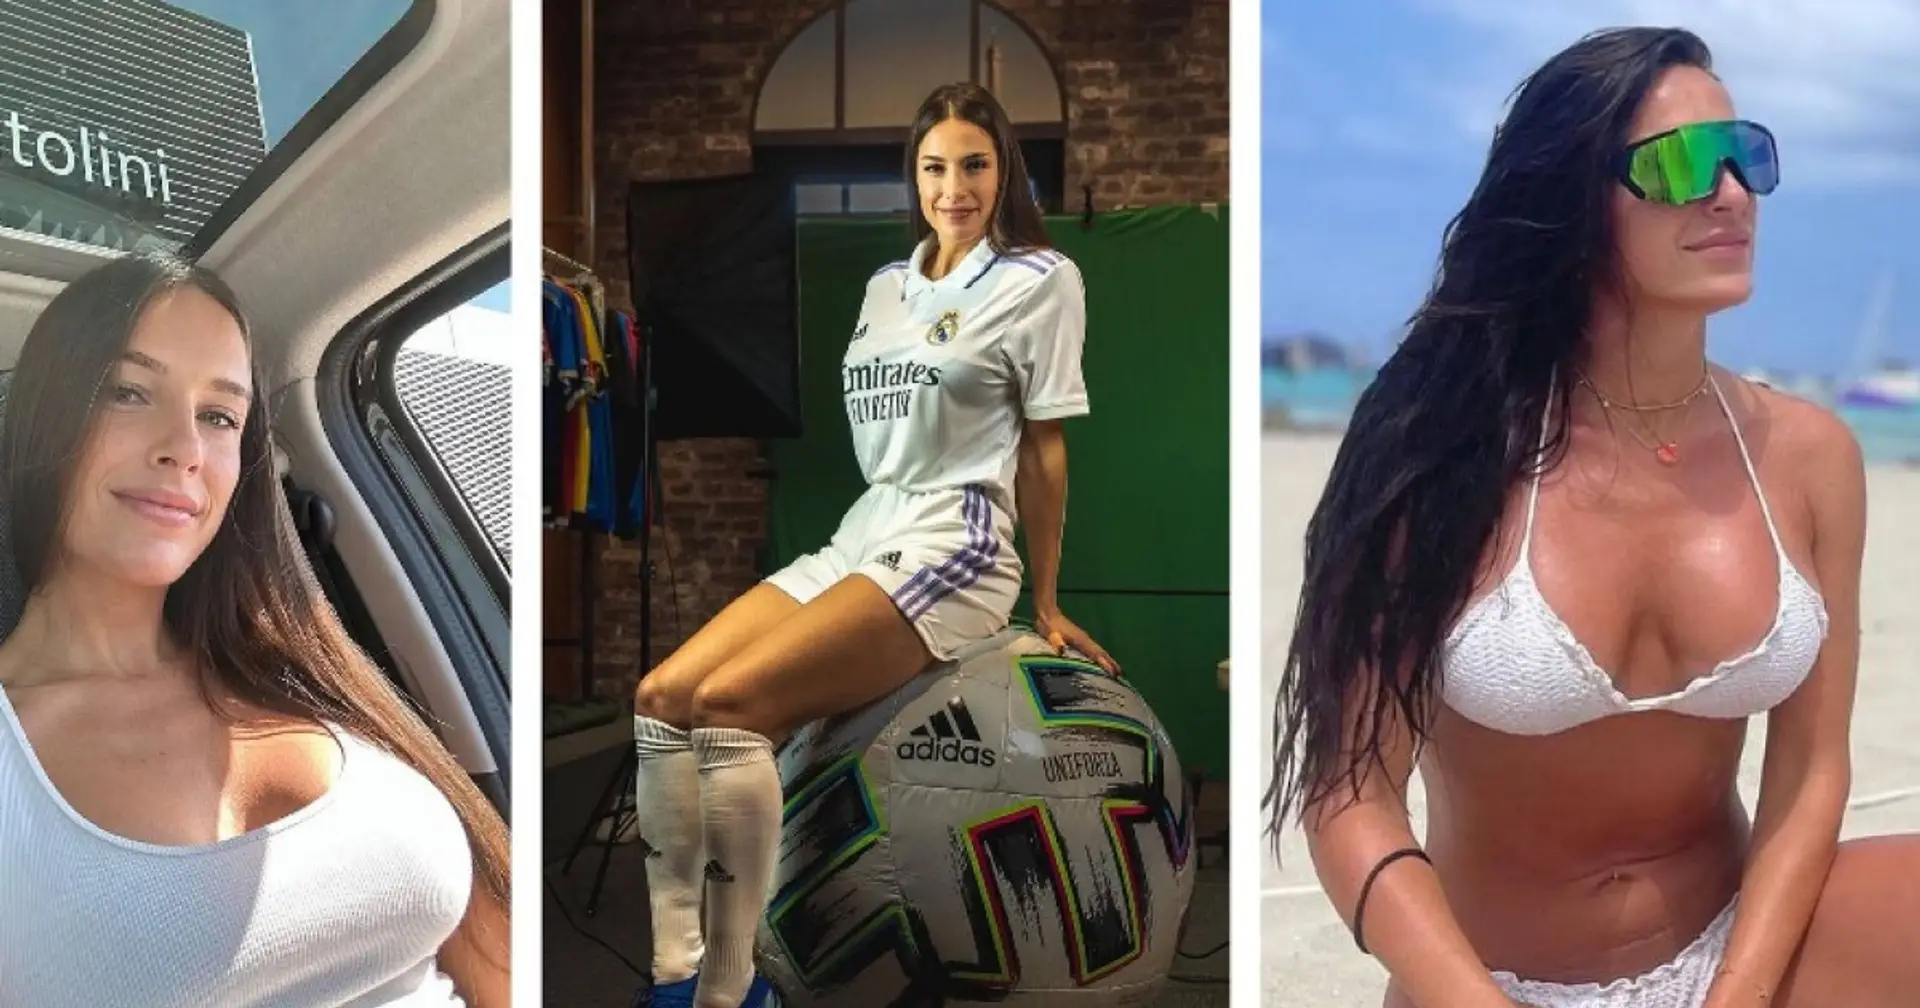 Lernt Agata Isabella Centasso kennen, die schönste Fußballerin Italiens und eine der attraktivsten Sportlerinnen des Landes 😍